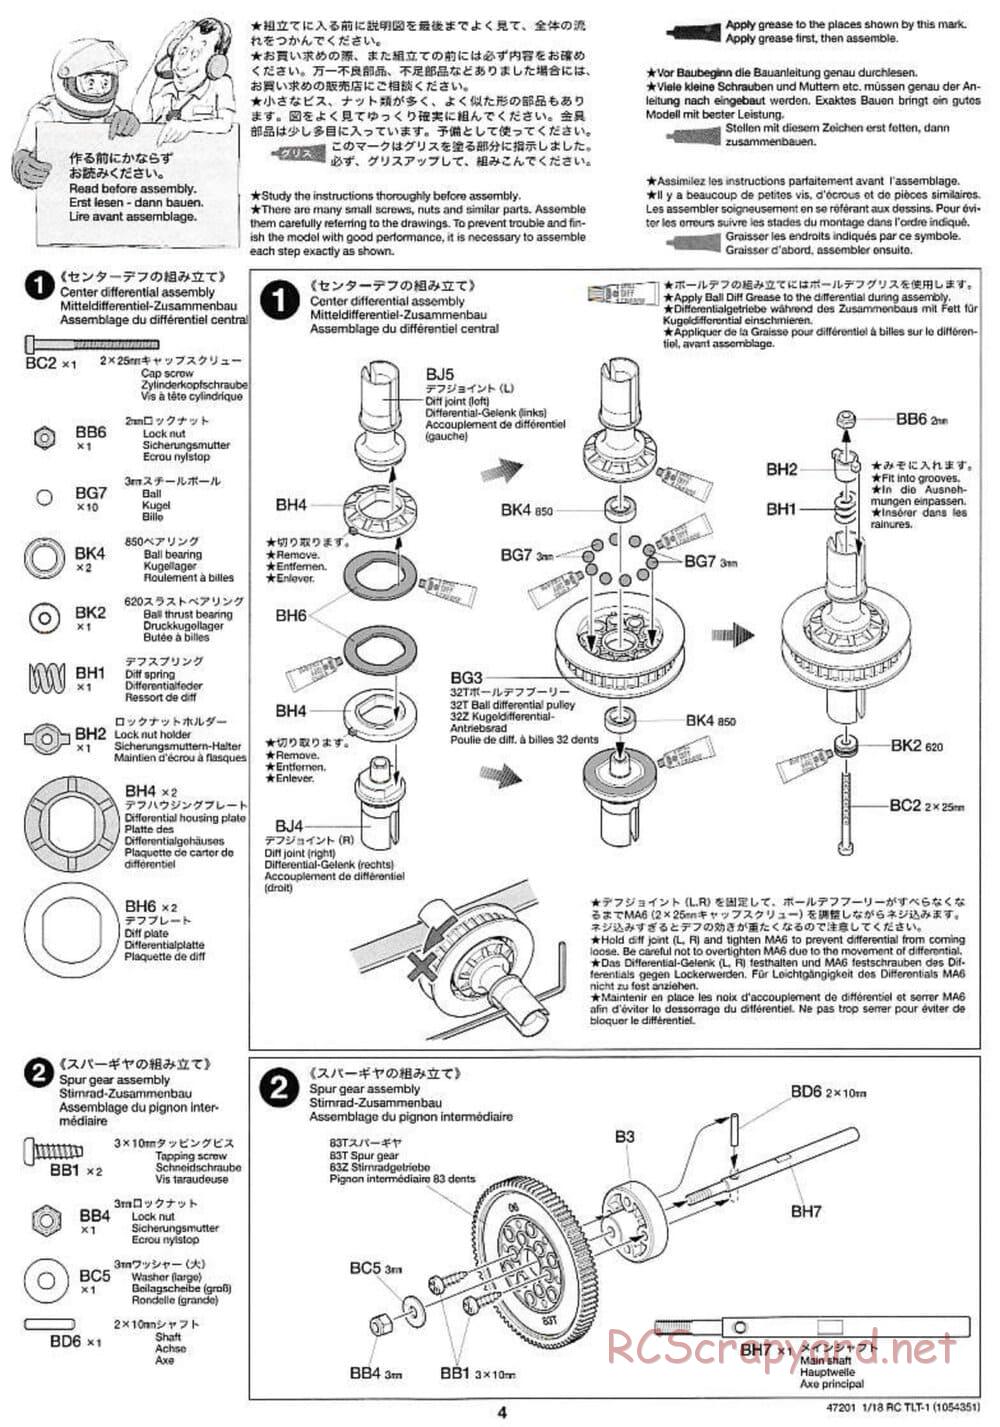 Tamiya - Rock Buster - TLT-1 Chassis - Manual - Page 4